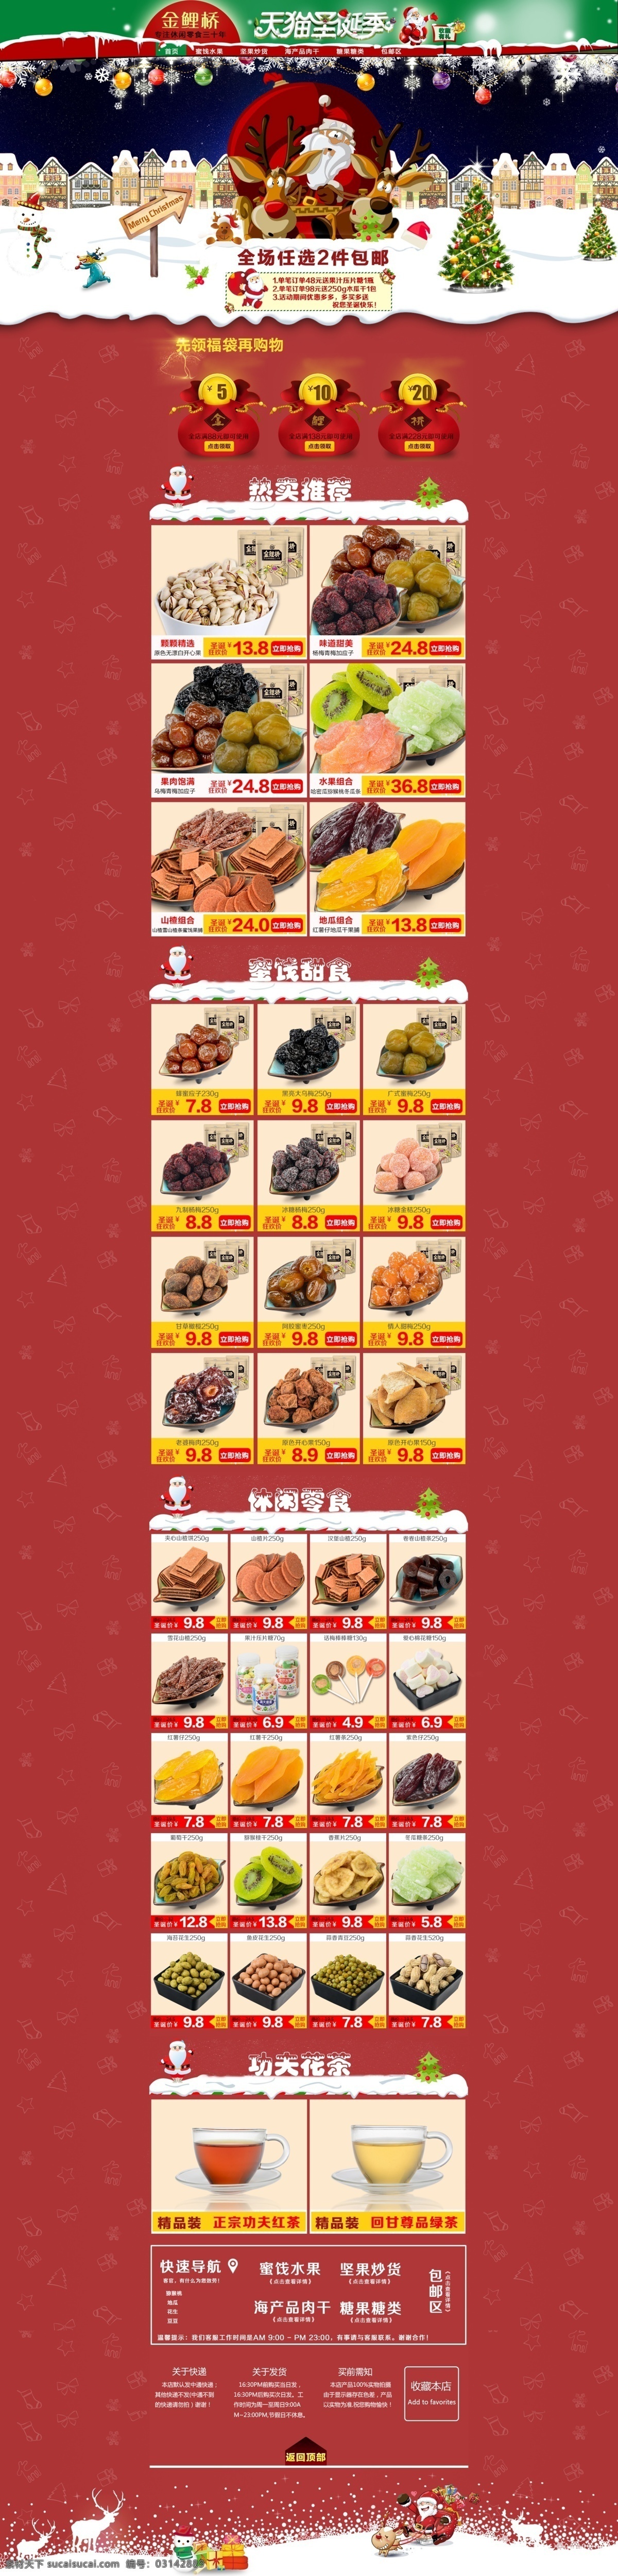 食品类 圣诞节 海报 模板 原创设计 原创淘宝设计